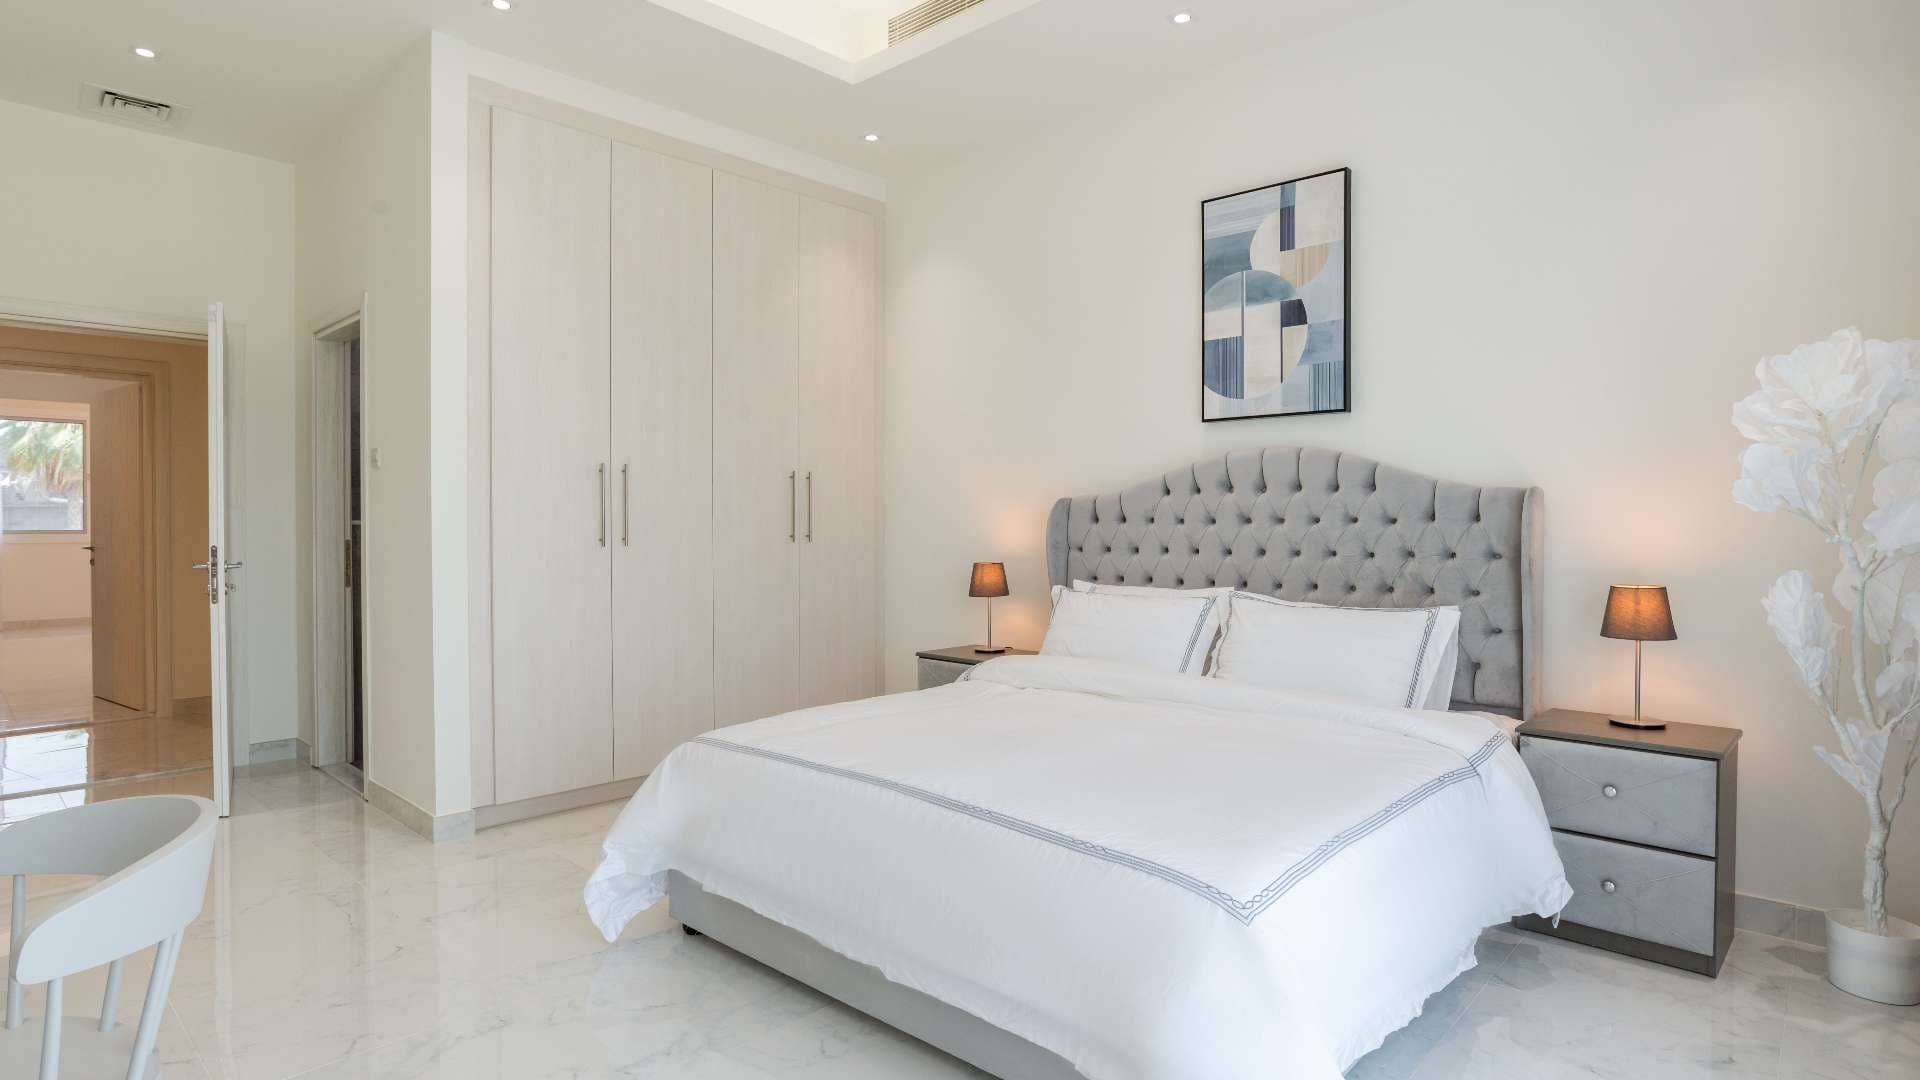 6 Bedroom Villa For Sale Pearl Jumeirah Lp08107 34b1c577e9a7b00.jpeg